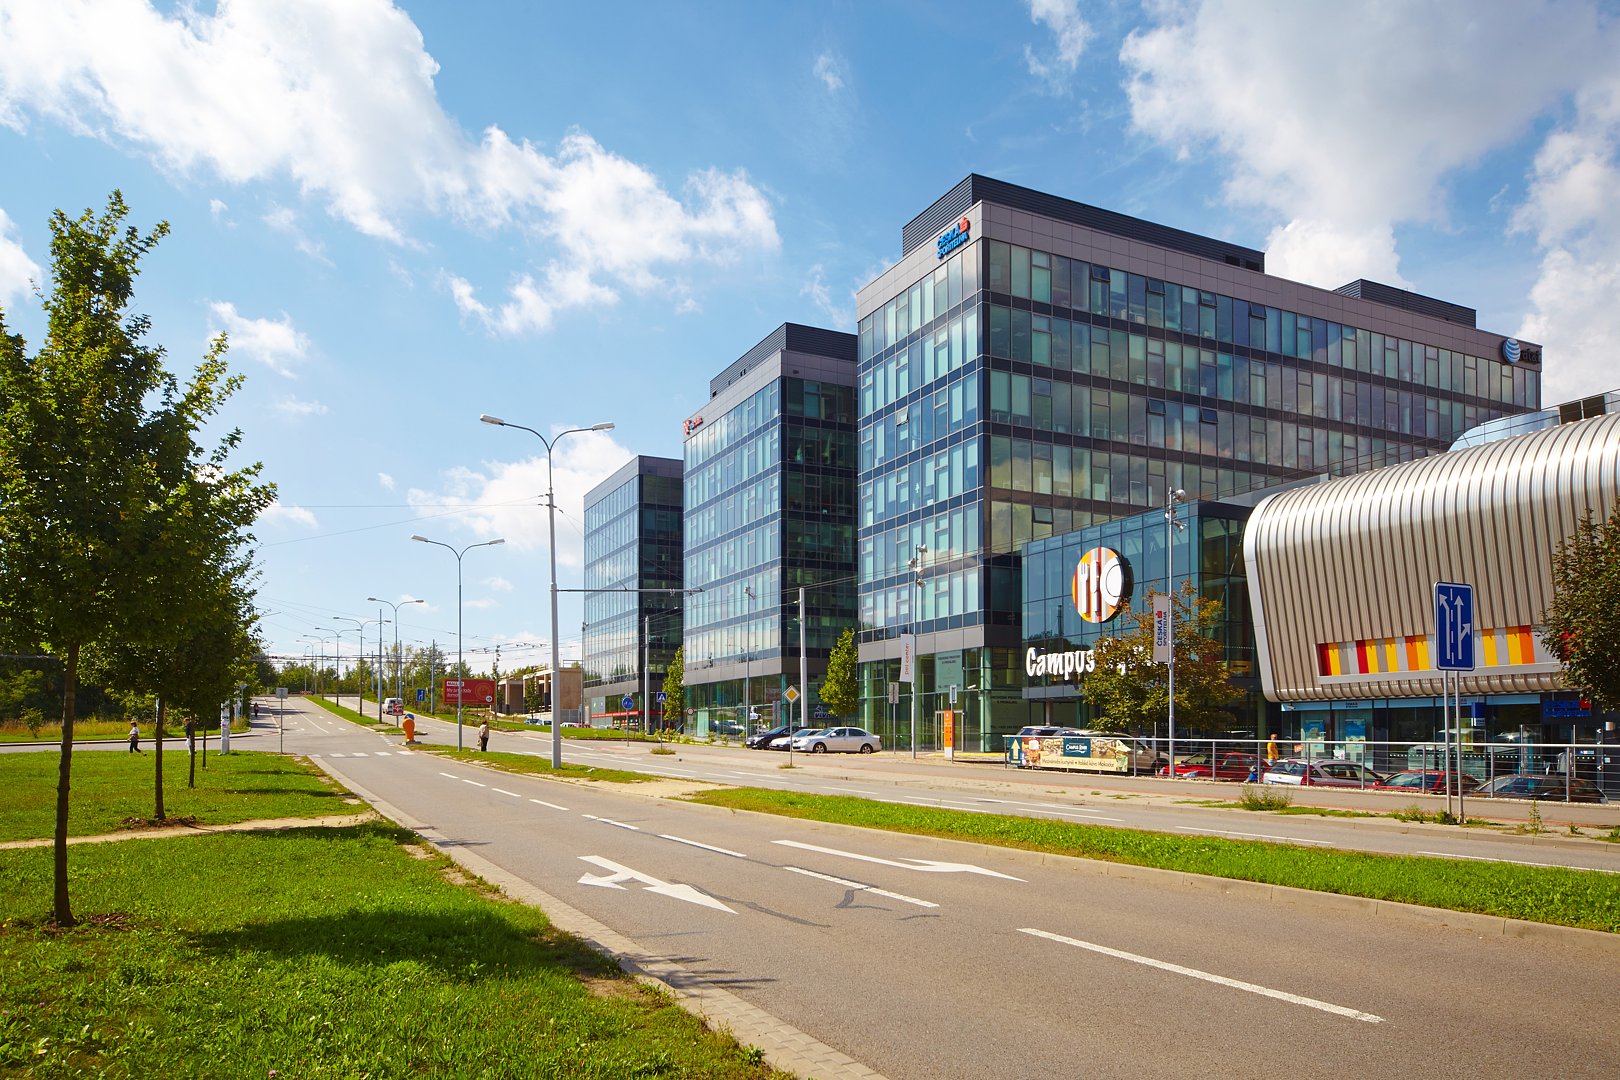 Campus Science Park v Brně je kompletně dokončený. Tvoří do celkem 5 budov v nejvyšším standardu